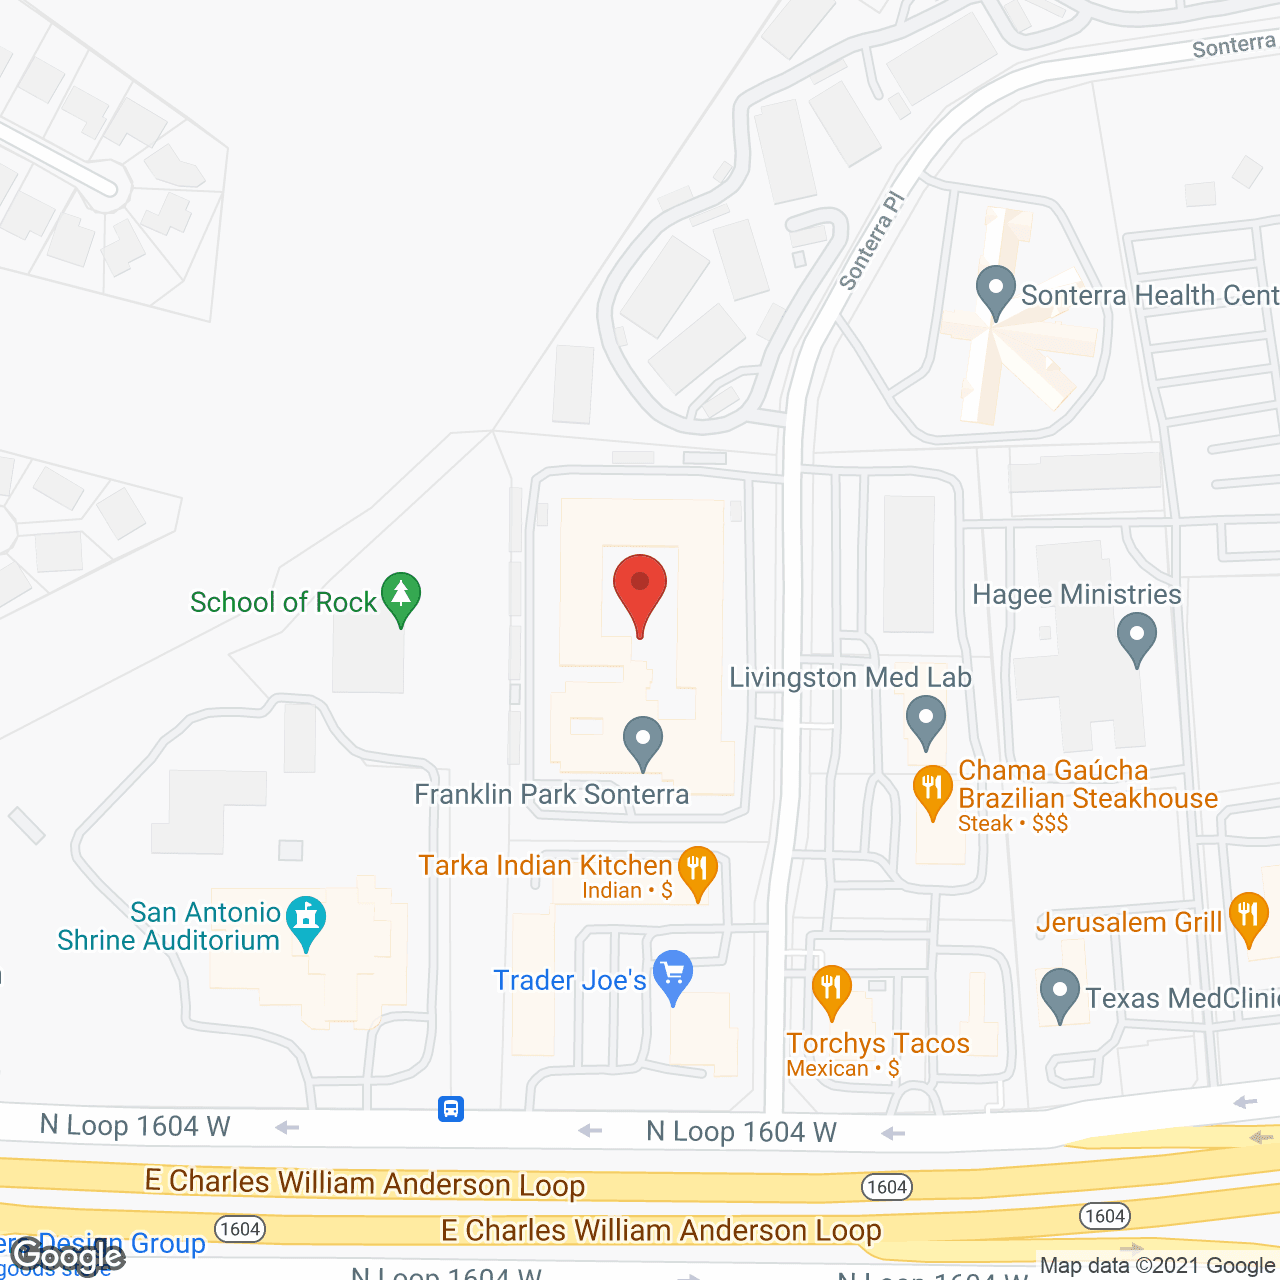 Franklin Park Sonterra - AL in google map